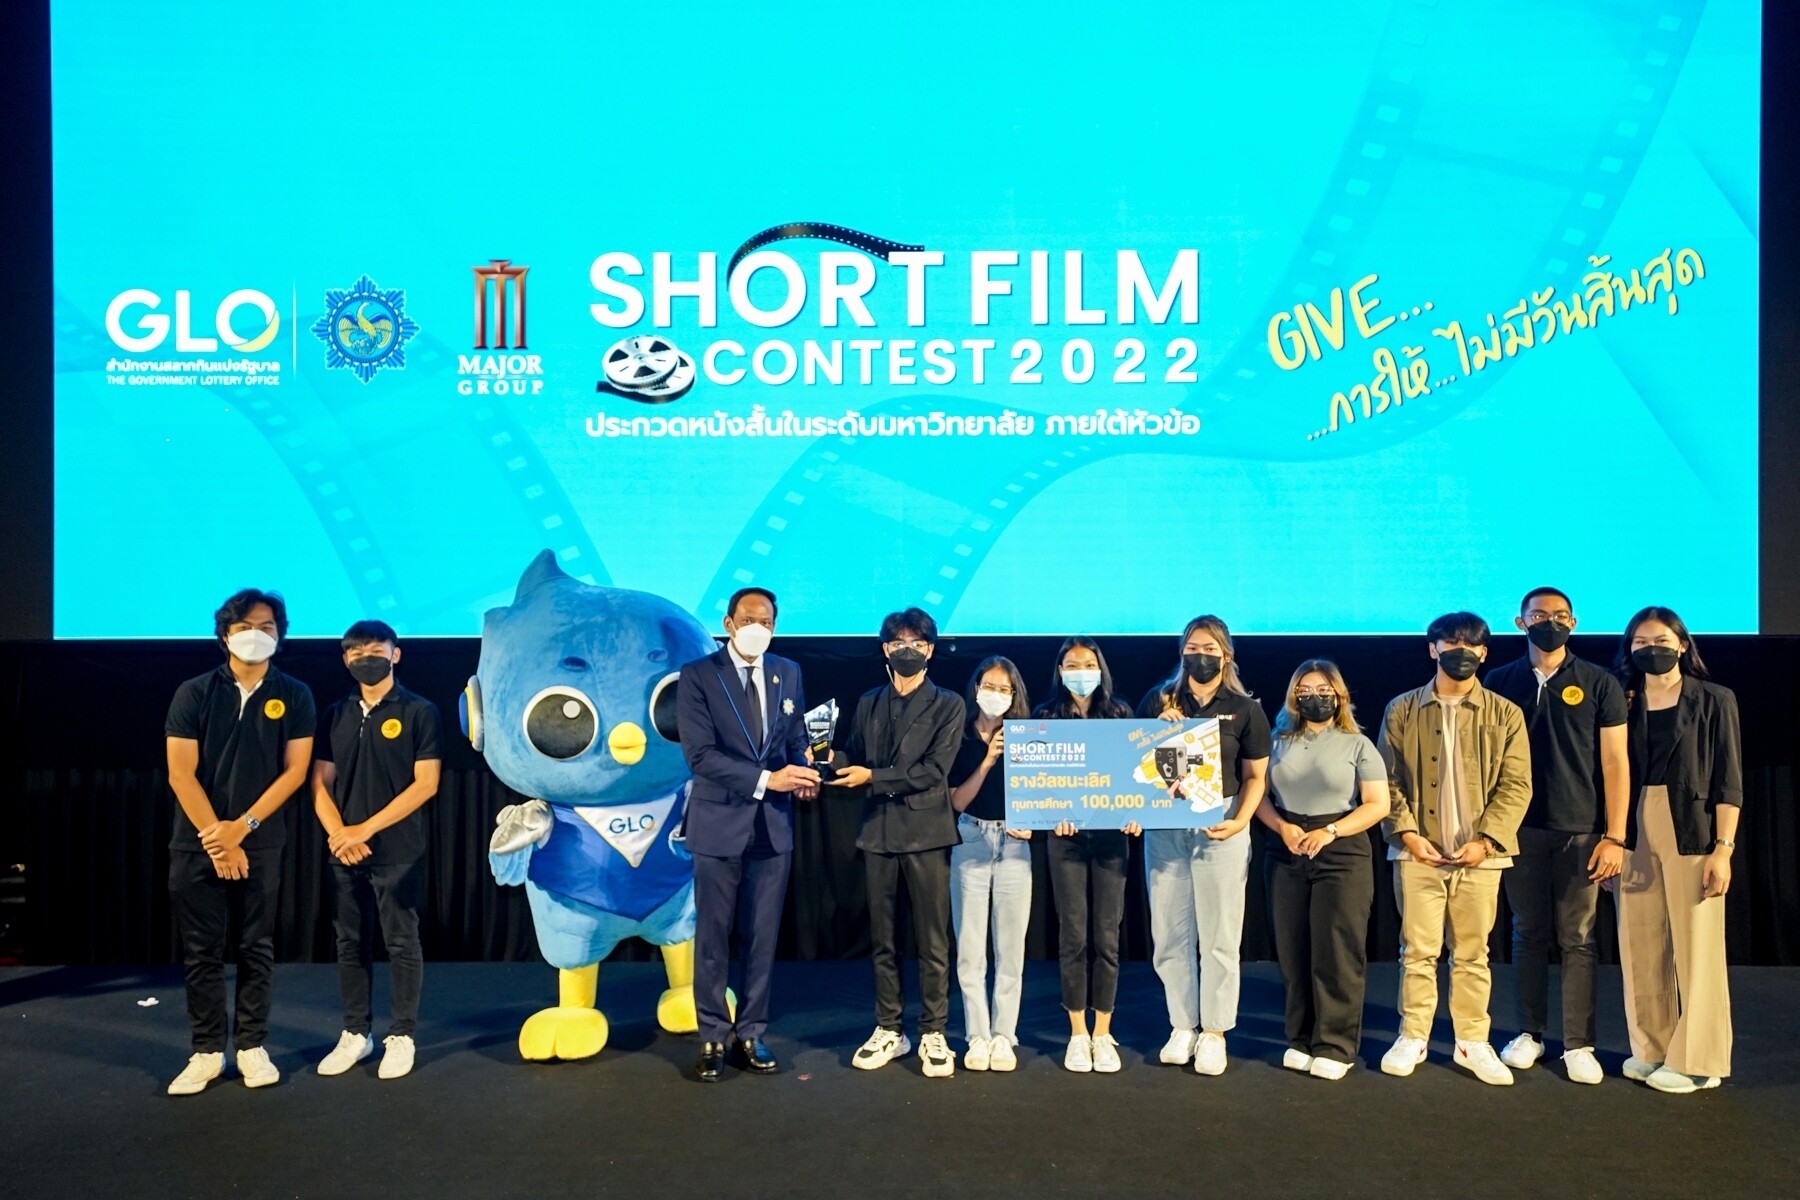 "ทีม Rustic Studio" จากมหาวิทยาลัยราชภัฏเชียงใหม่ คว้าแชมป์การประกวดหนังสั้น!! "GLO Short Film Contest 2022"